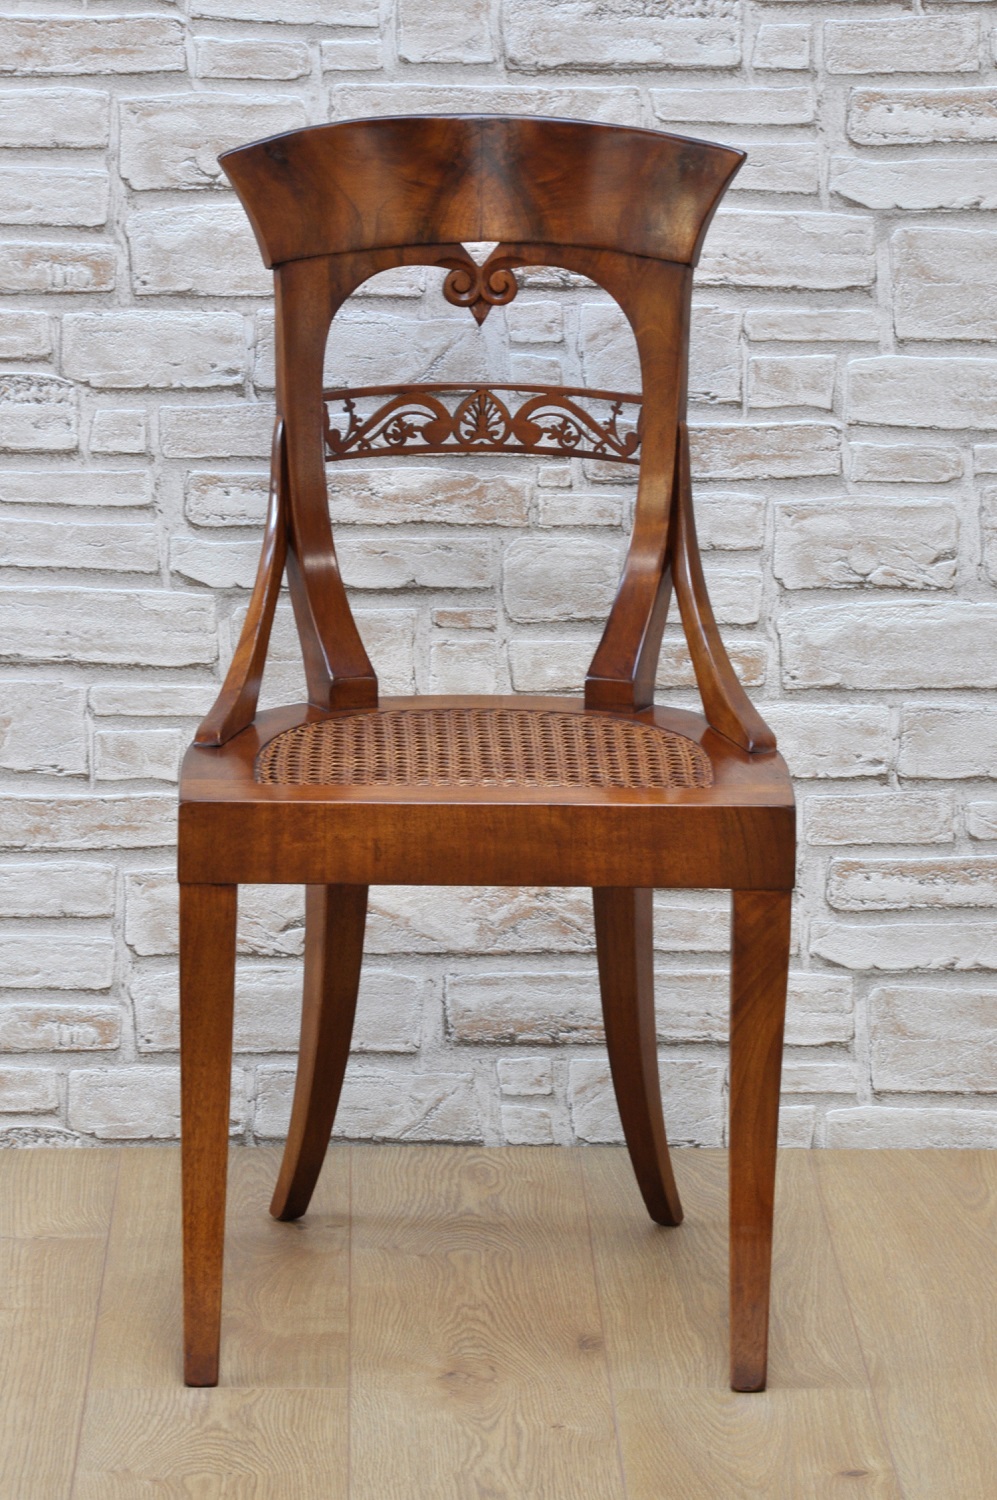 esclusiva e importante sedia in stile Biedermeier realizzata in legno nobile di noce massello nel laboratorio di alta ebanisteria del brand di lusso Vangelista mobili 1960 arredo di pregio